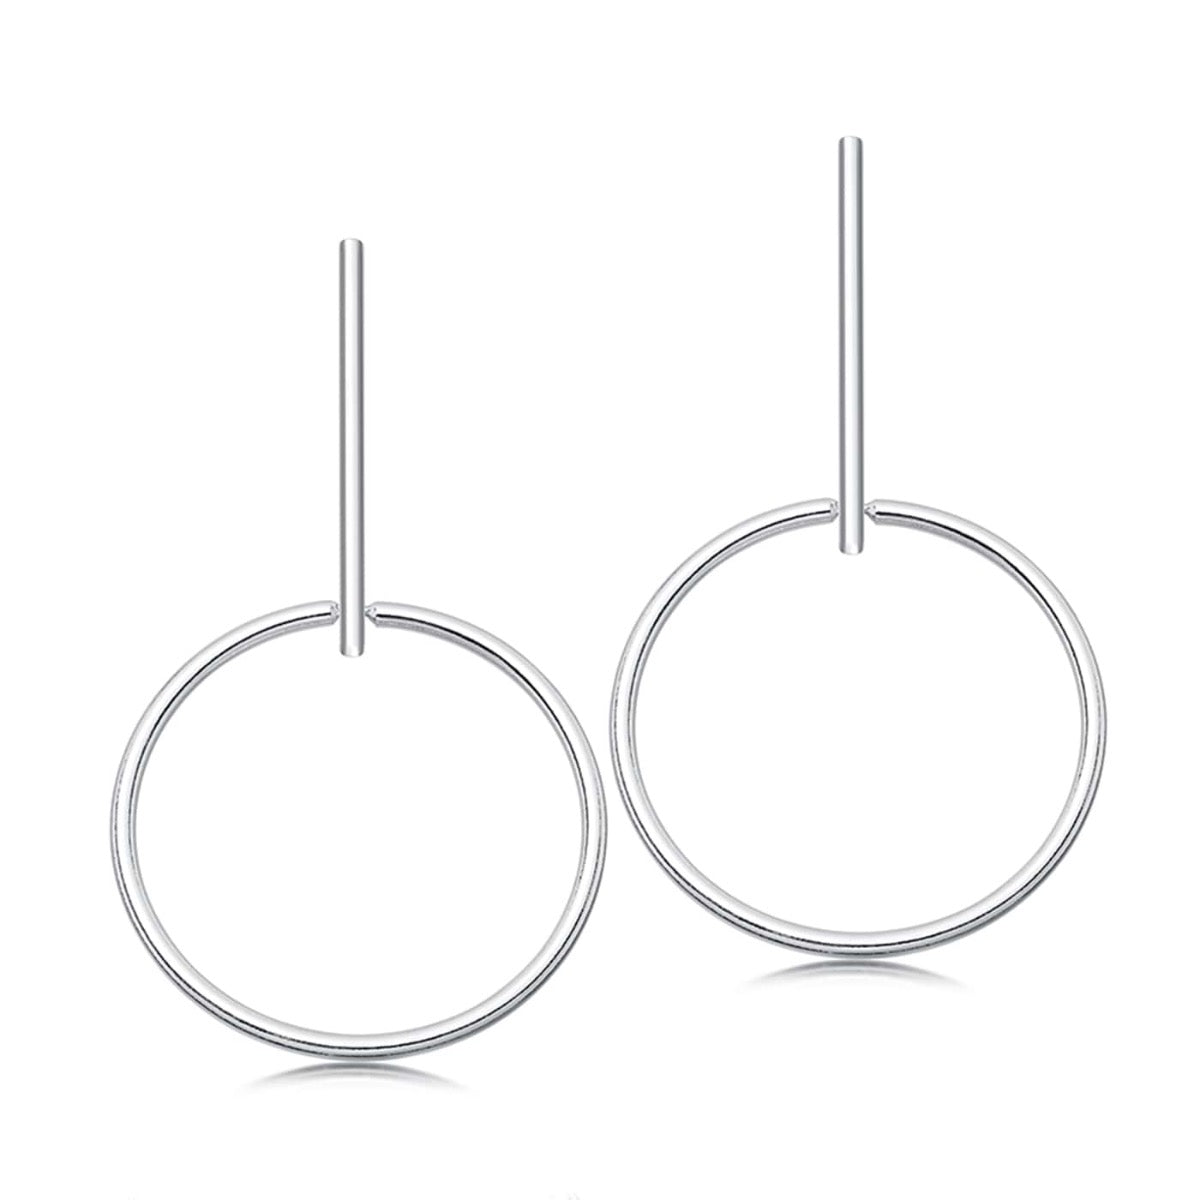 Silver hoop drop earrings